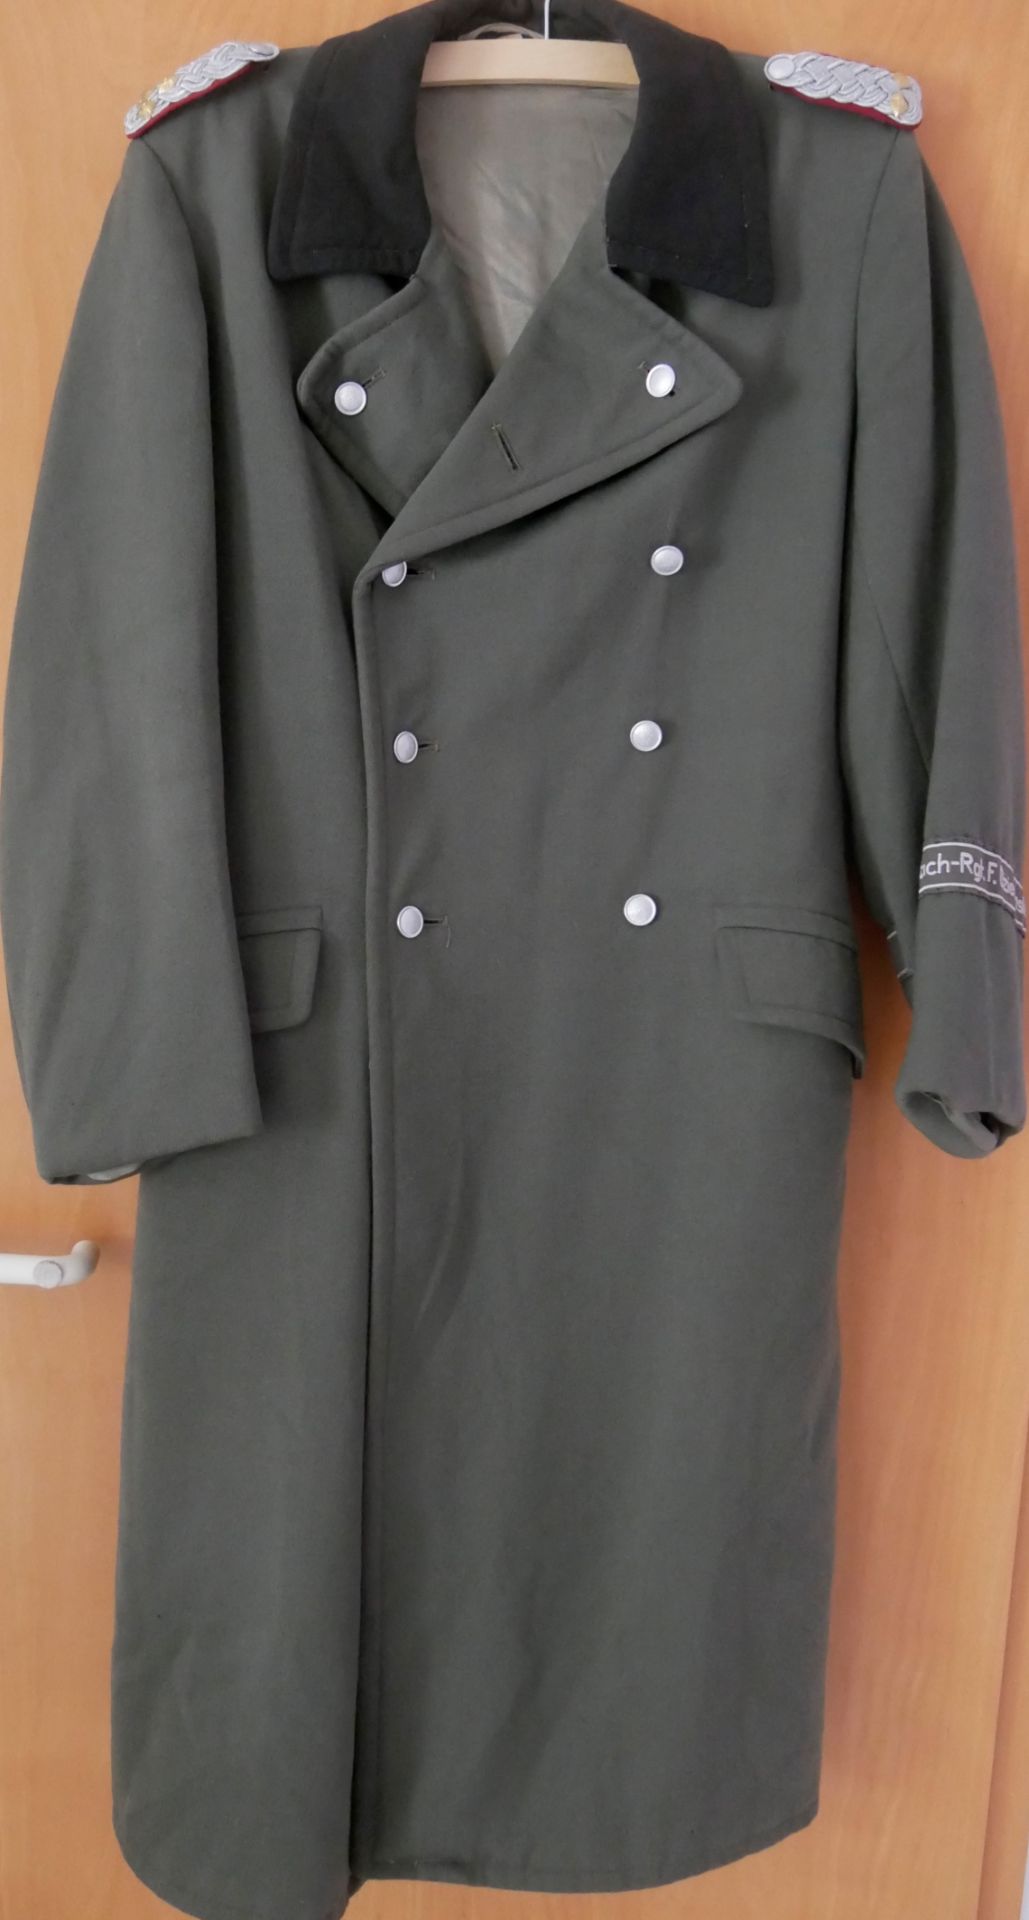 Aus Sammelauflösung! DDR Uniform Jacke / Mantel mit Effekten. Wach-Rgt. Gr. 52, guter Zustand. Bitte